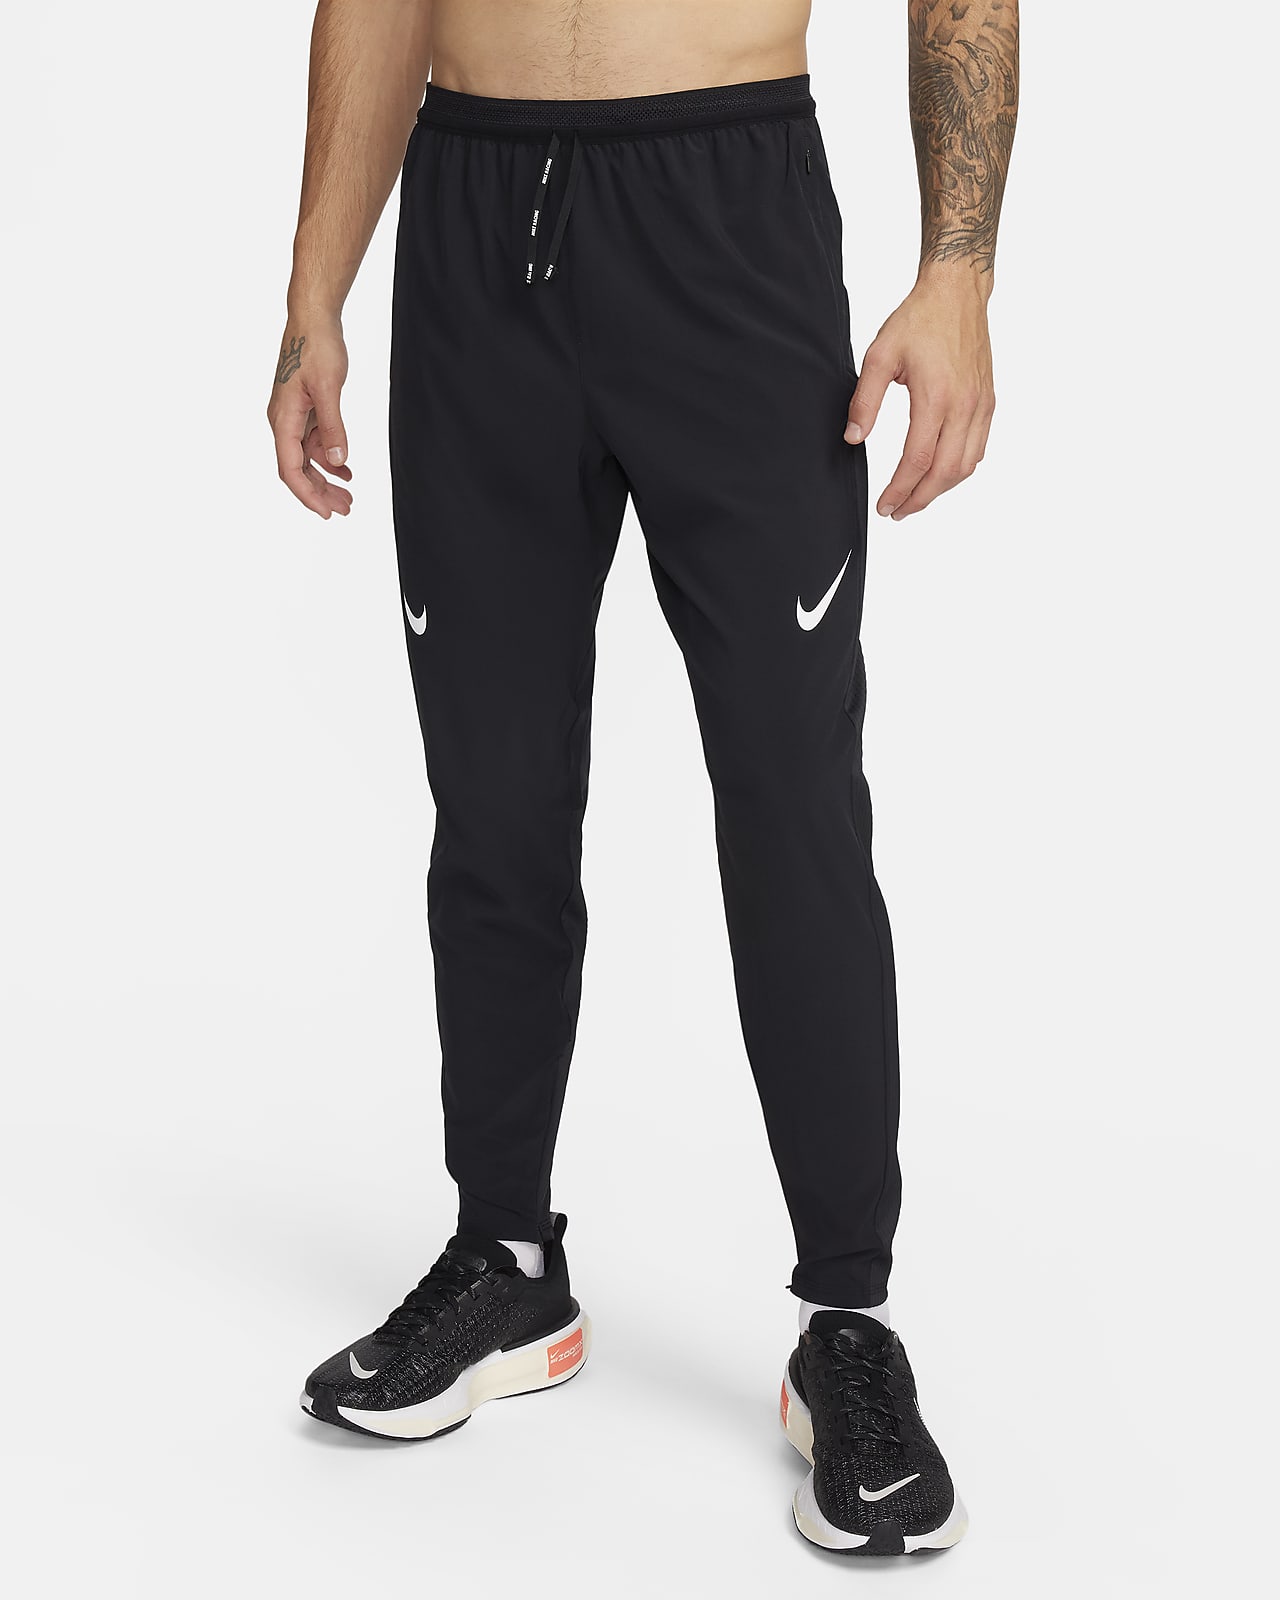  Nike Men's Dri-FIT ADV AeroSwift Men's 1/2 Length